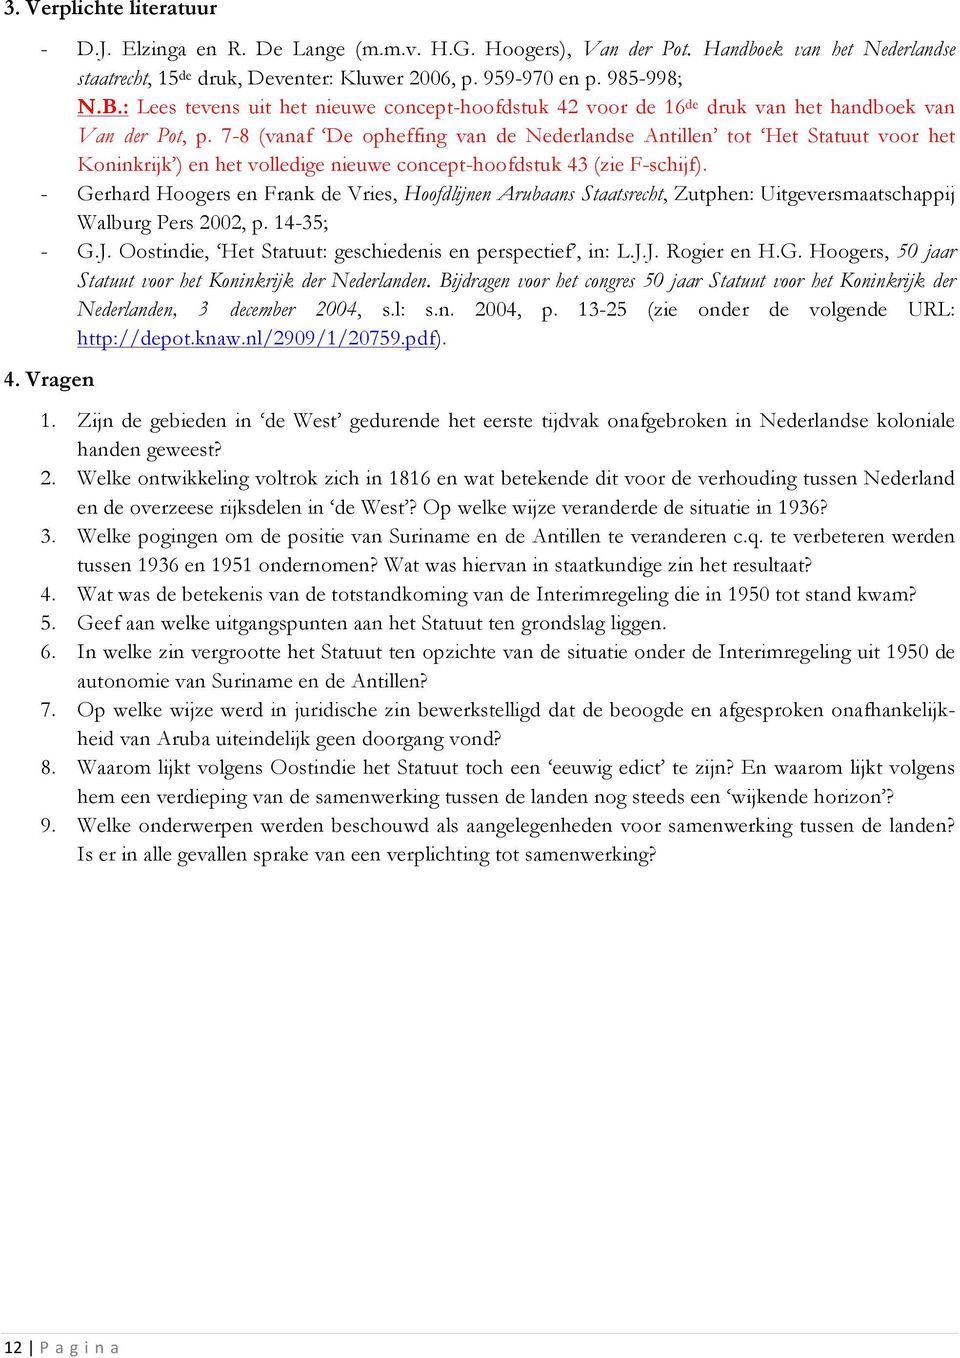 7-8 (vanaf De opheffing van de Nederlandse Antillen tot Het Statuut voor het Koninkrijk ) en het volledige nieuwe concept-hoofdstuk 43 (zie F-schijf).